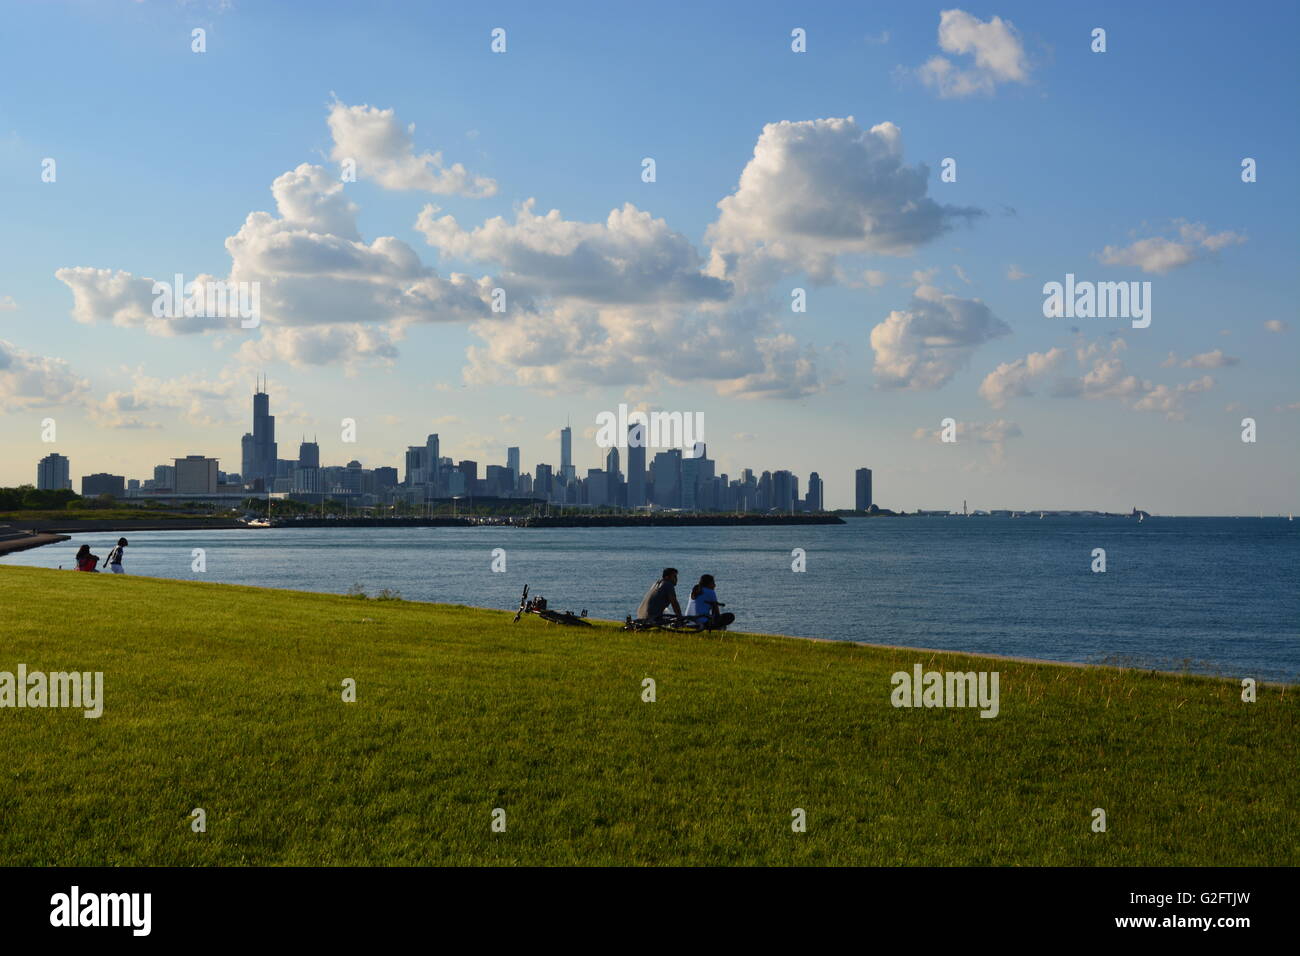 Una coppia fa una pausa sulla pista ciclabile fronte lago sul lato sud del quartiere di Kenwood a Chicago con lo skyline della città sullo sfondo. Foto Stock